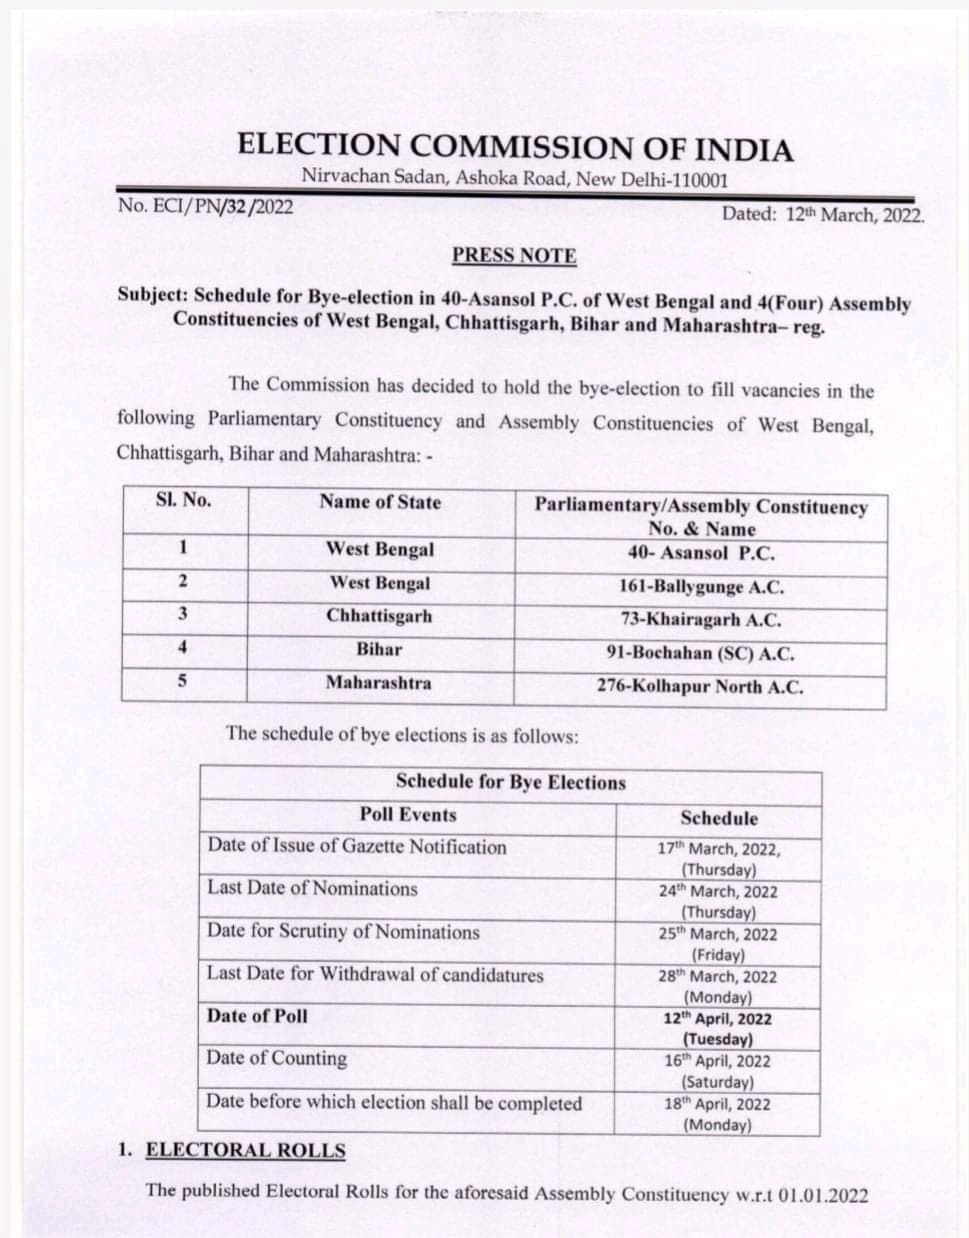 Bihar Breaking News Live: बोचहा उप चुनाव की घोषणा, 12 अप्रैल को होगा मतदान